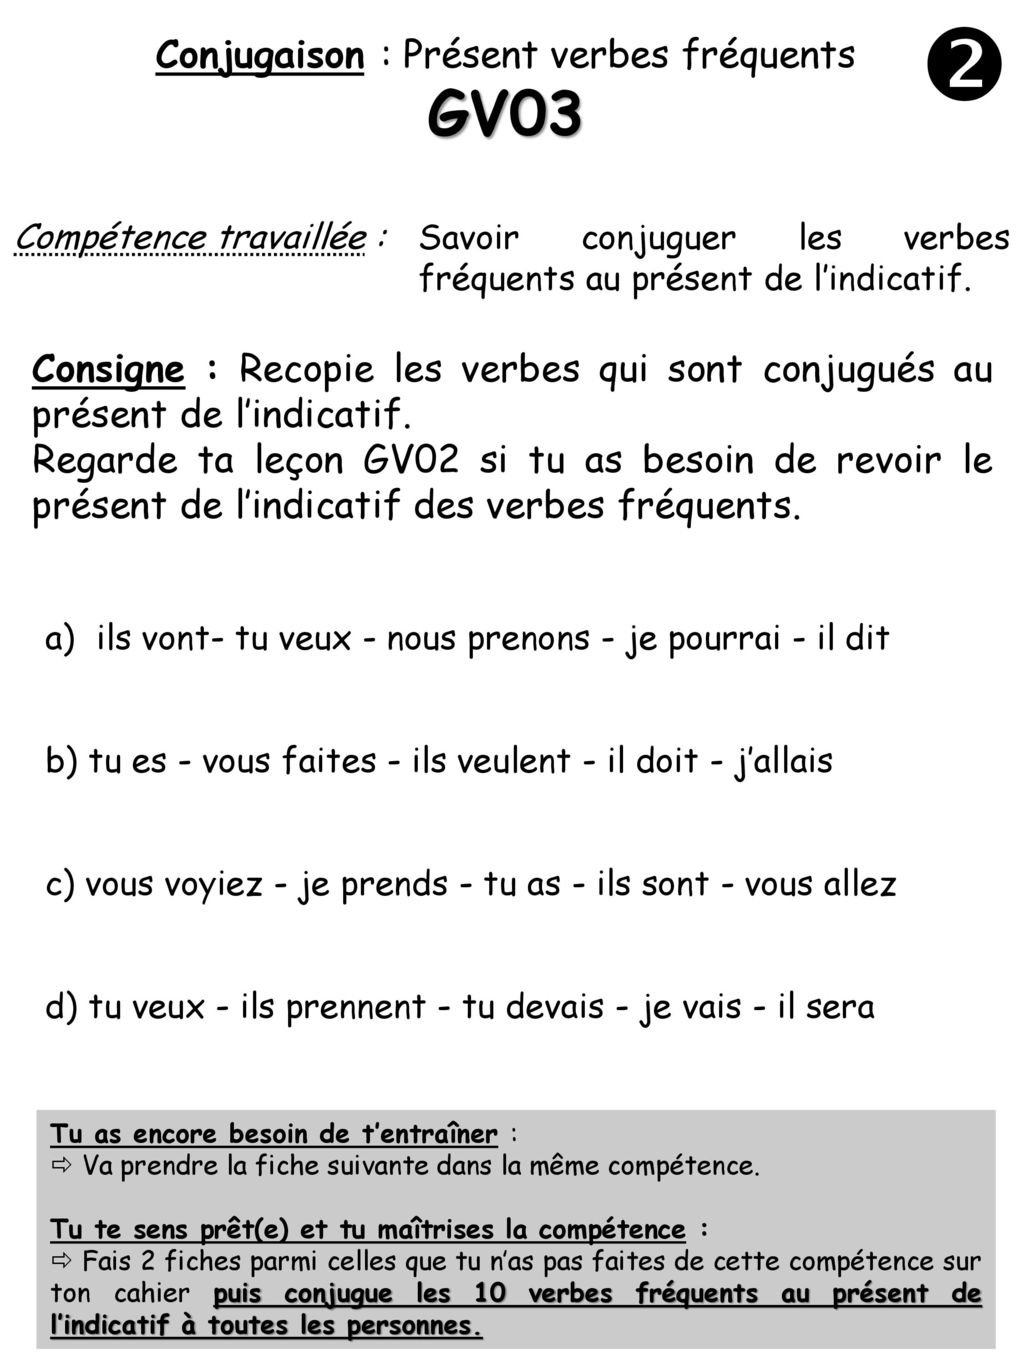 Conjugaison : Présent verbes fréquents